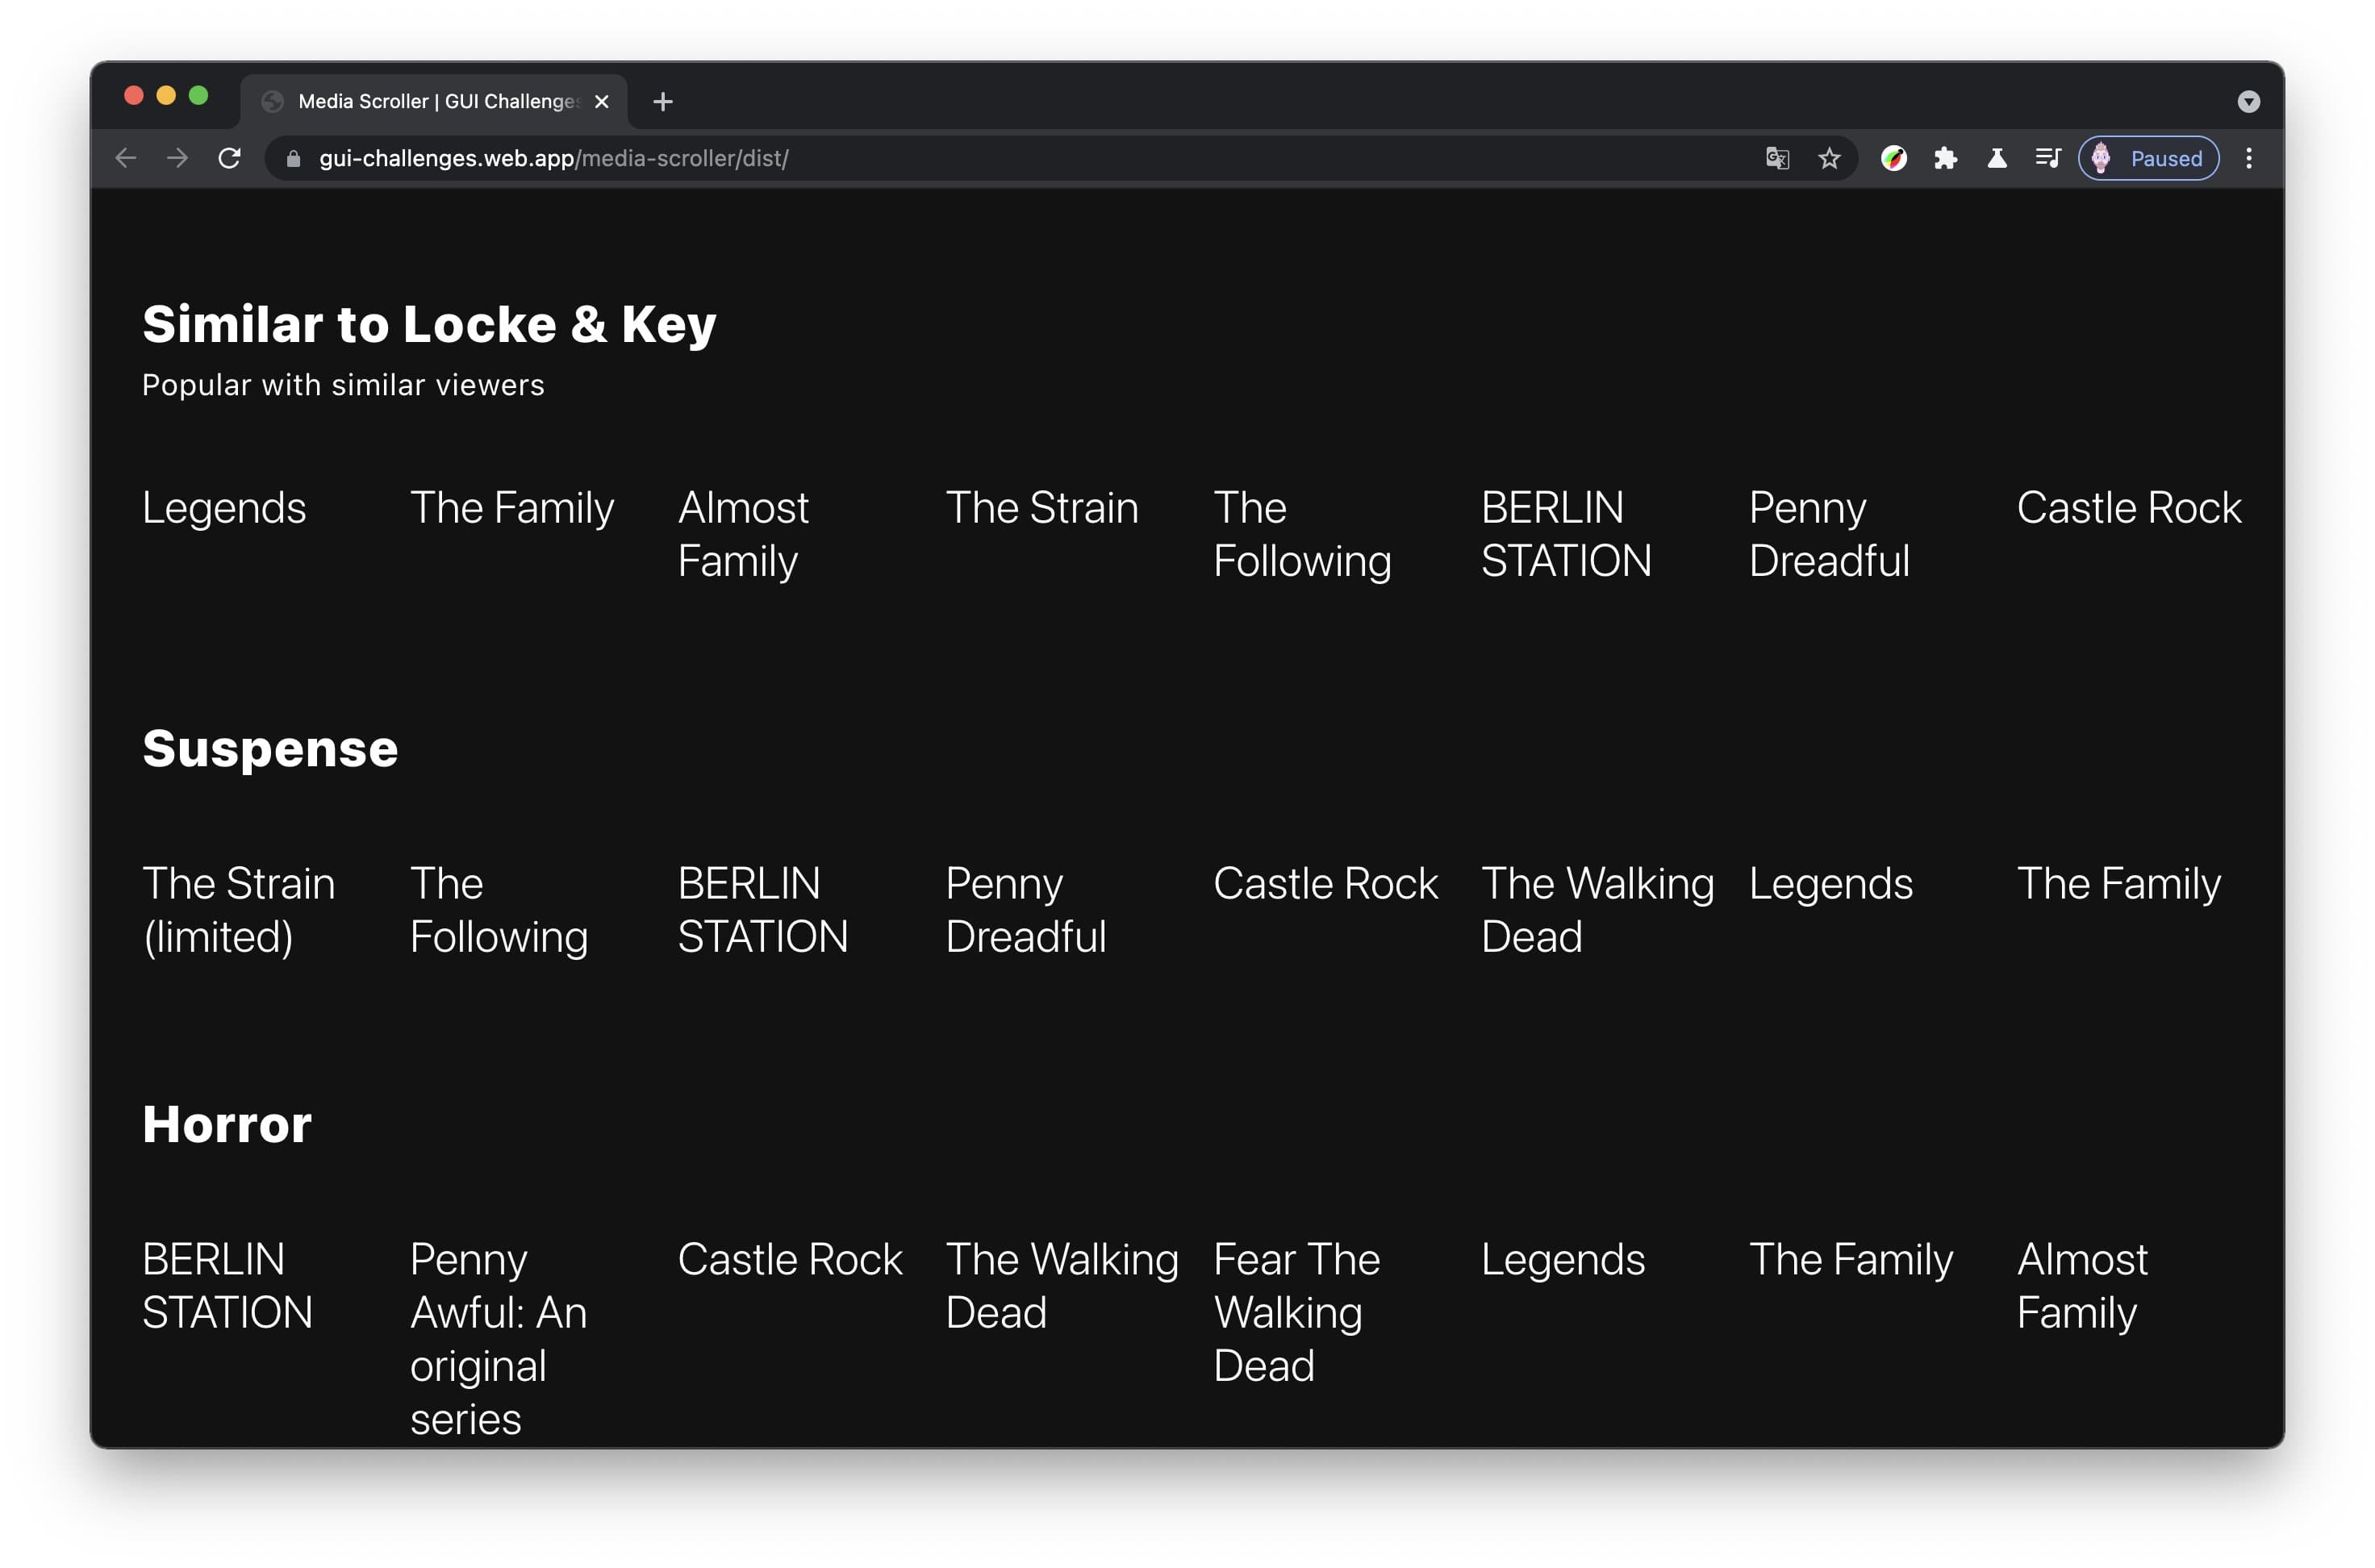 Снимок экрана интерфейса карусели телевизионного шоу без миниатюр и множества показанных названий.